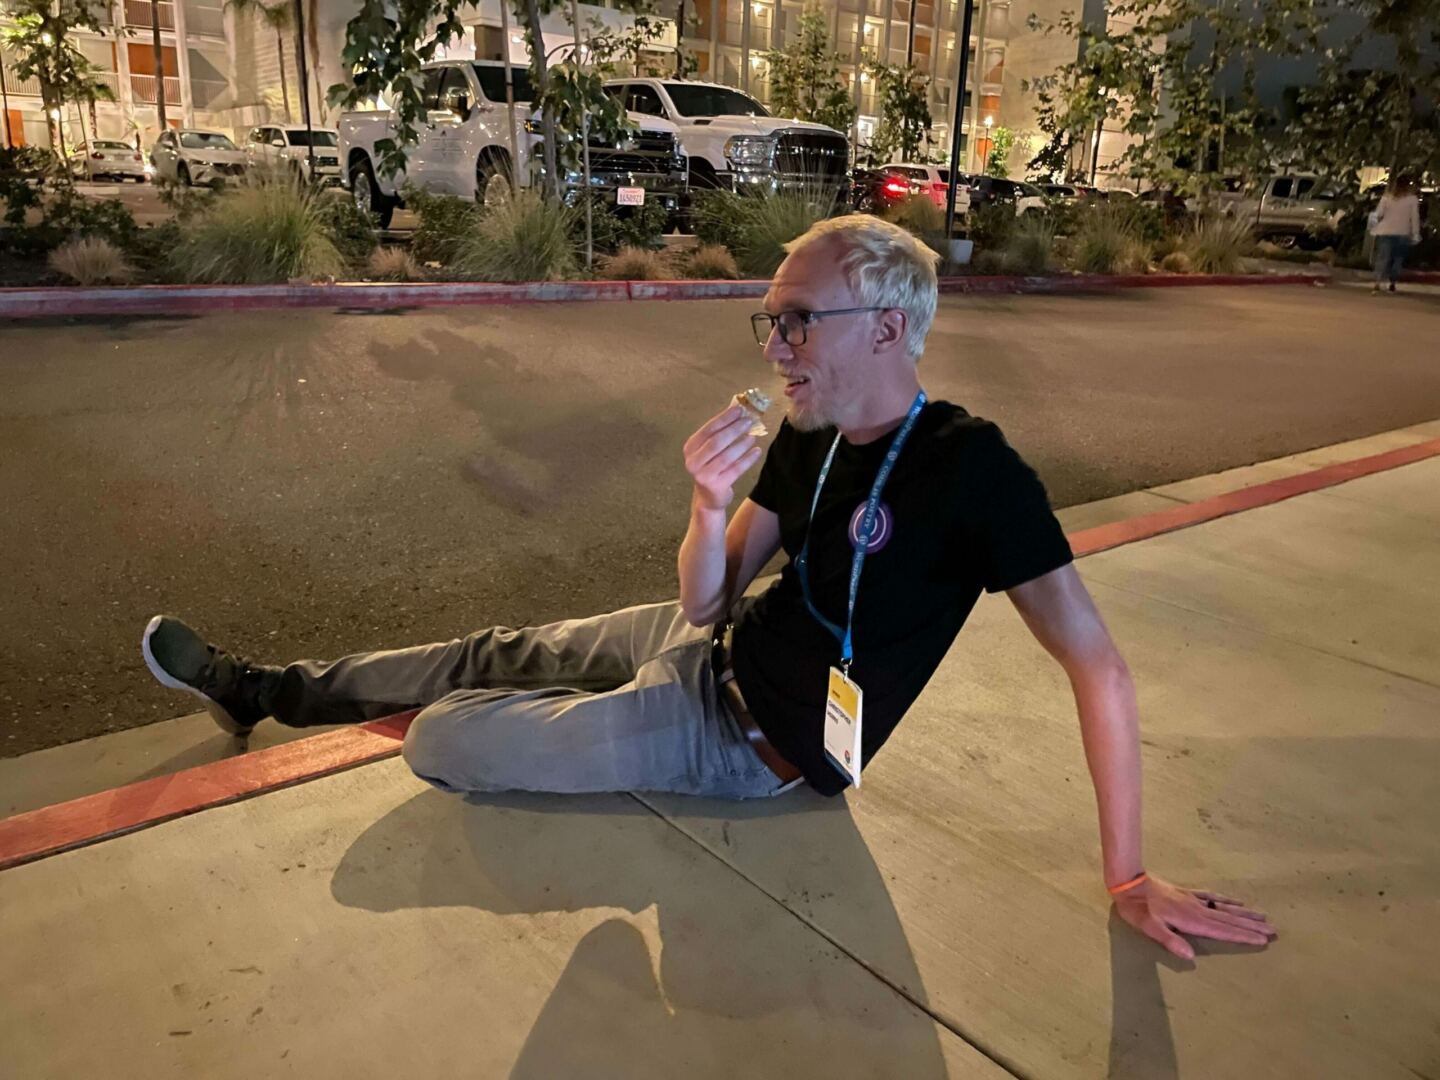 Chris sitting on a sidewalk curb at night